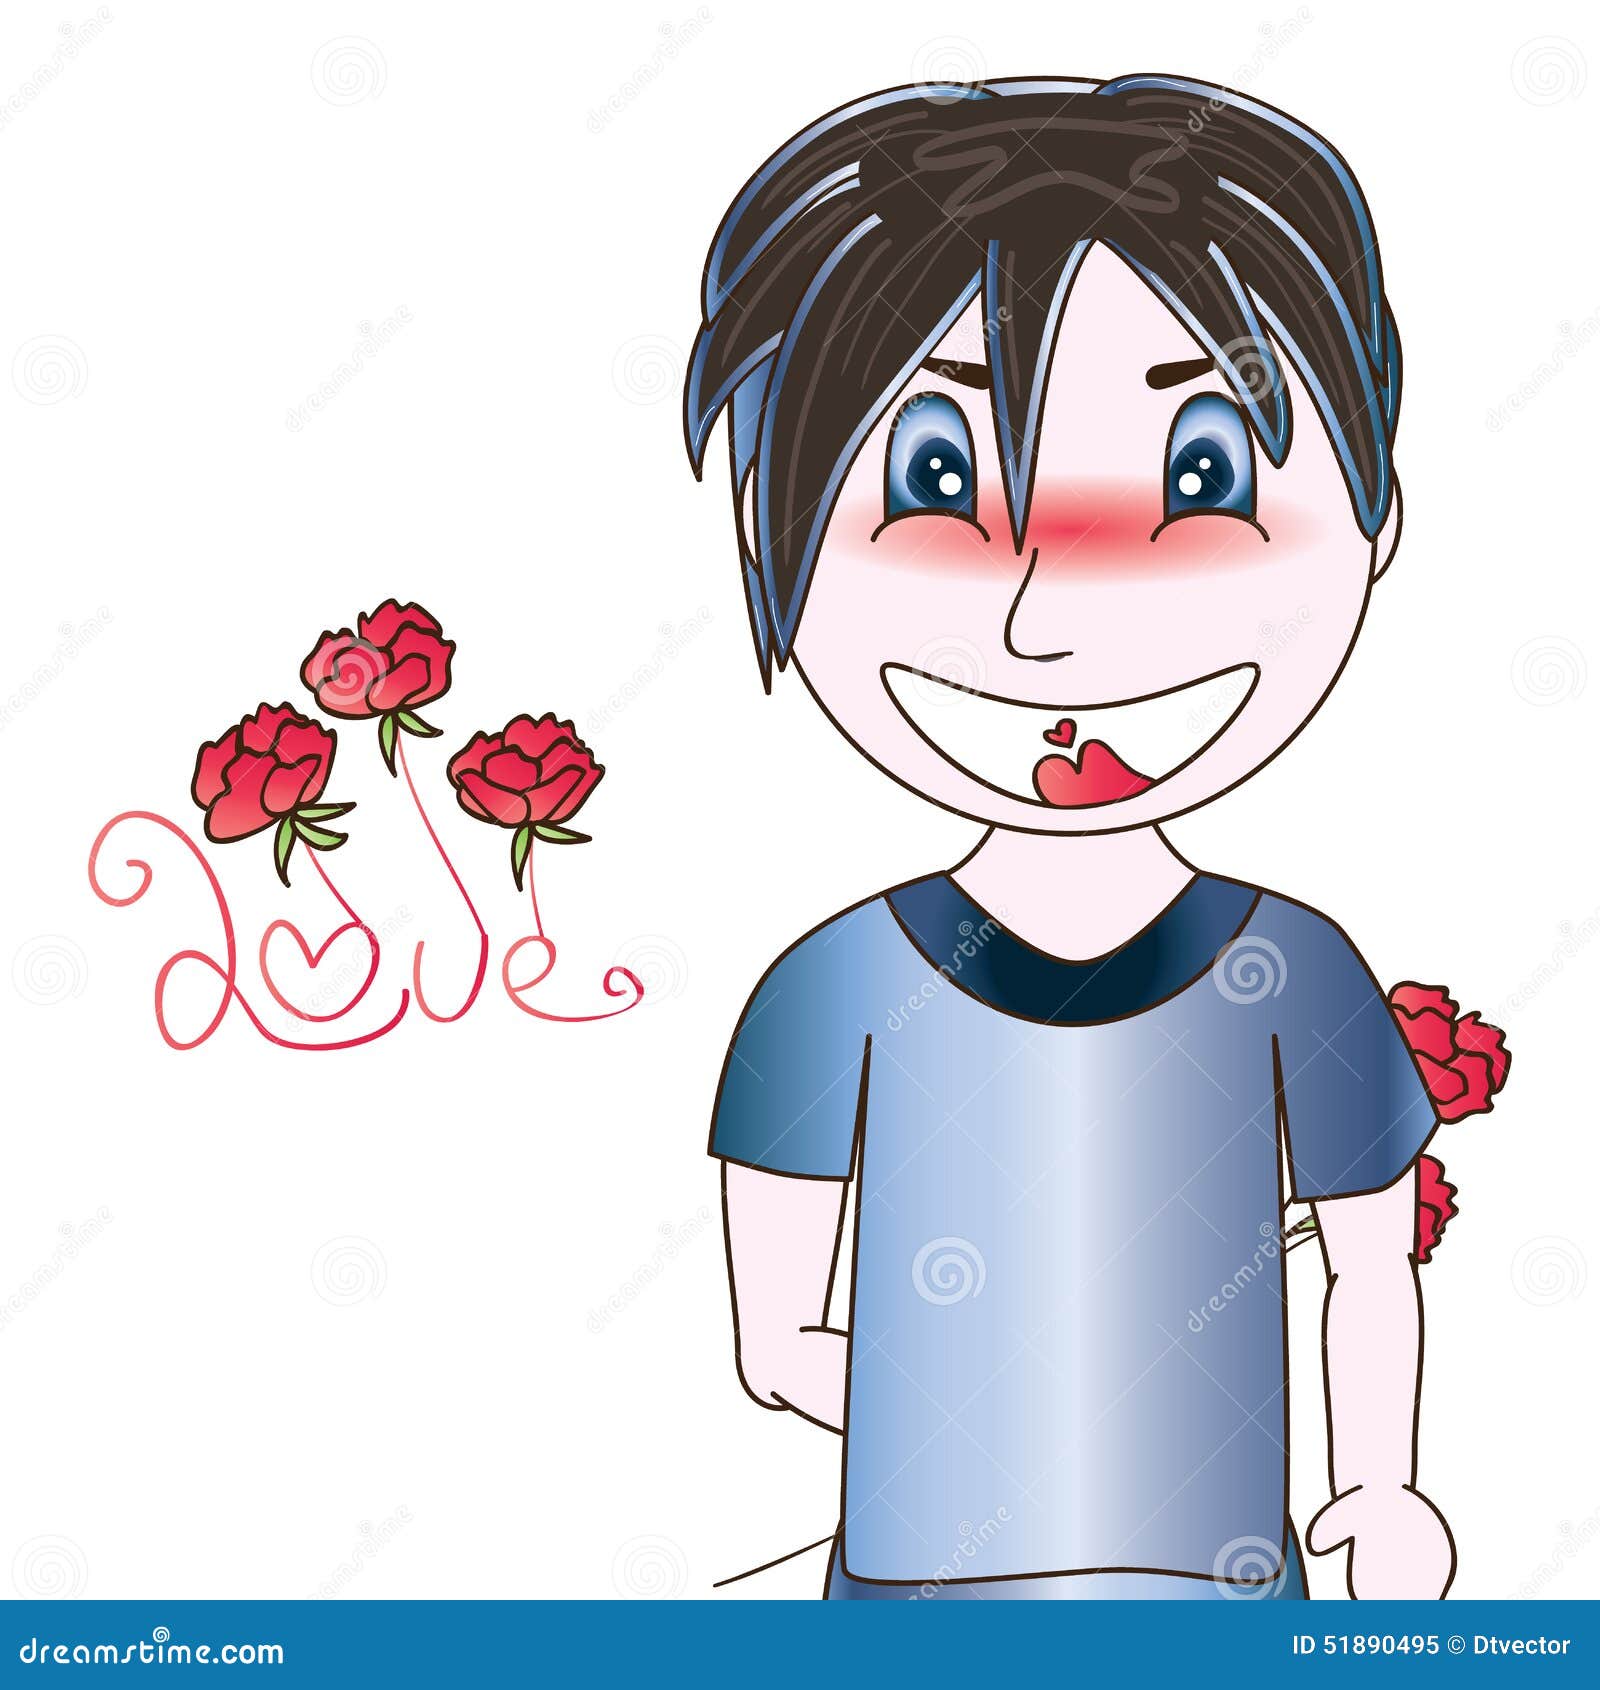 害羞的男孩给女孩一朵花 在空白背景 库存图片. 图片 包括有 关系, 礼品, 幸福, 敬慕, 少许, 乐趣 - 52263999